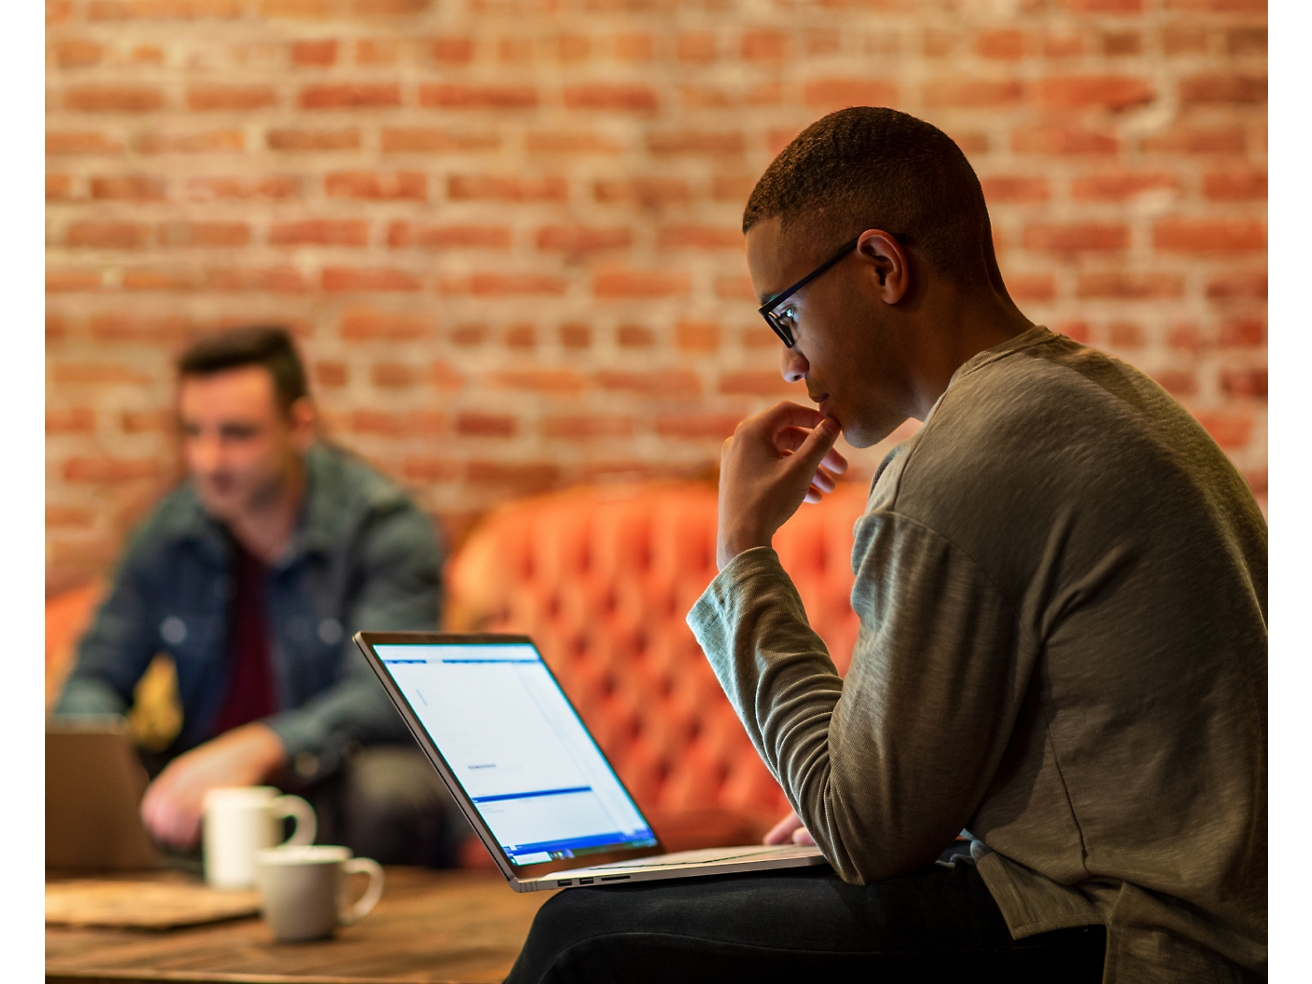 Ein konzentrierter Mann mit Brille benutzt einen Laptop in einer lockeren Büroumgebung, während im Hintergrund eine weitere Person zu sehen ist.